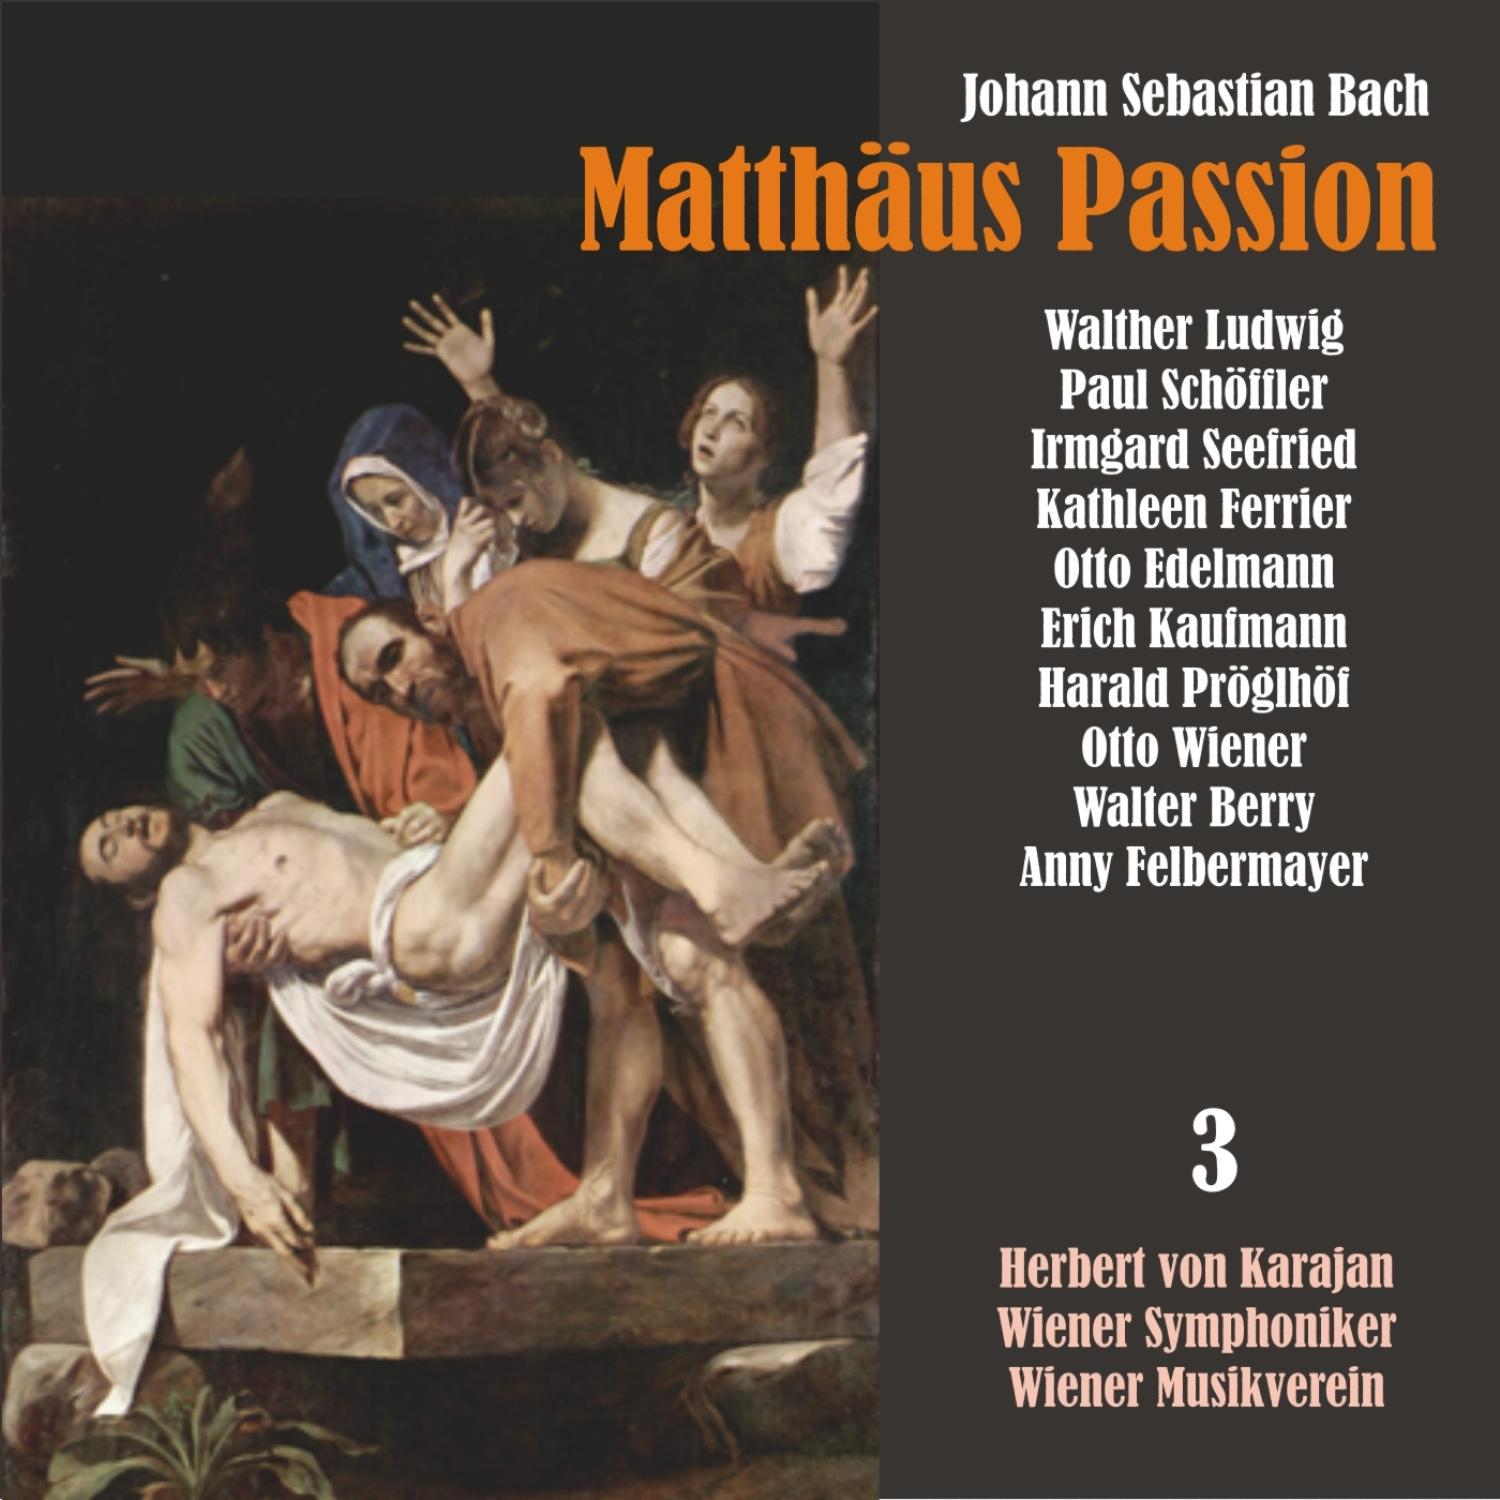 Matth us Passion, BWV 244: " Da nahmen die Kriegsknechte"  Und speieten ihn an"